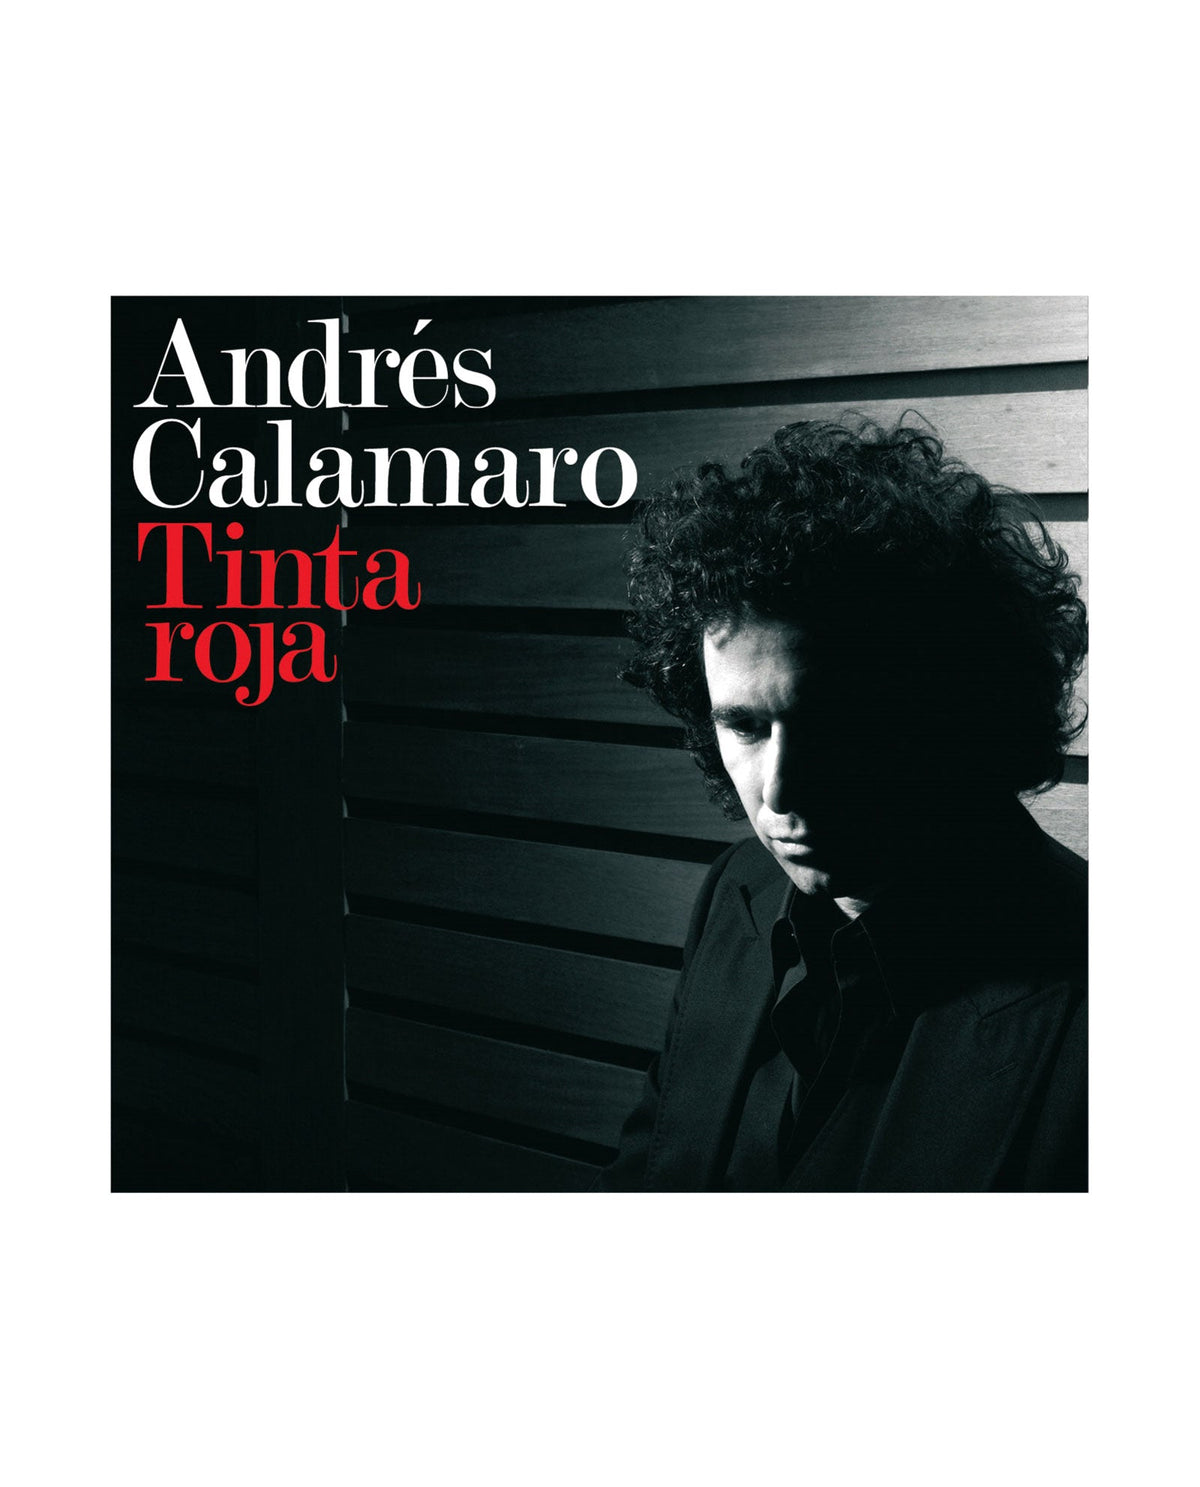 Andrés Calamaro - LP Vinilo + CD "Tinta Roja" - D2fy · Rocktud - Rocktud